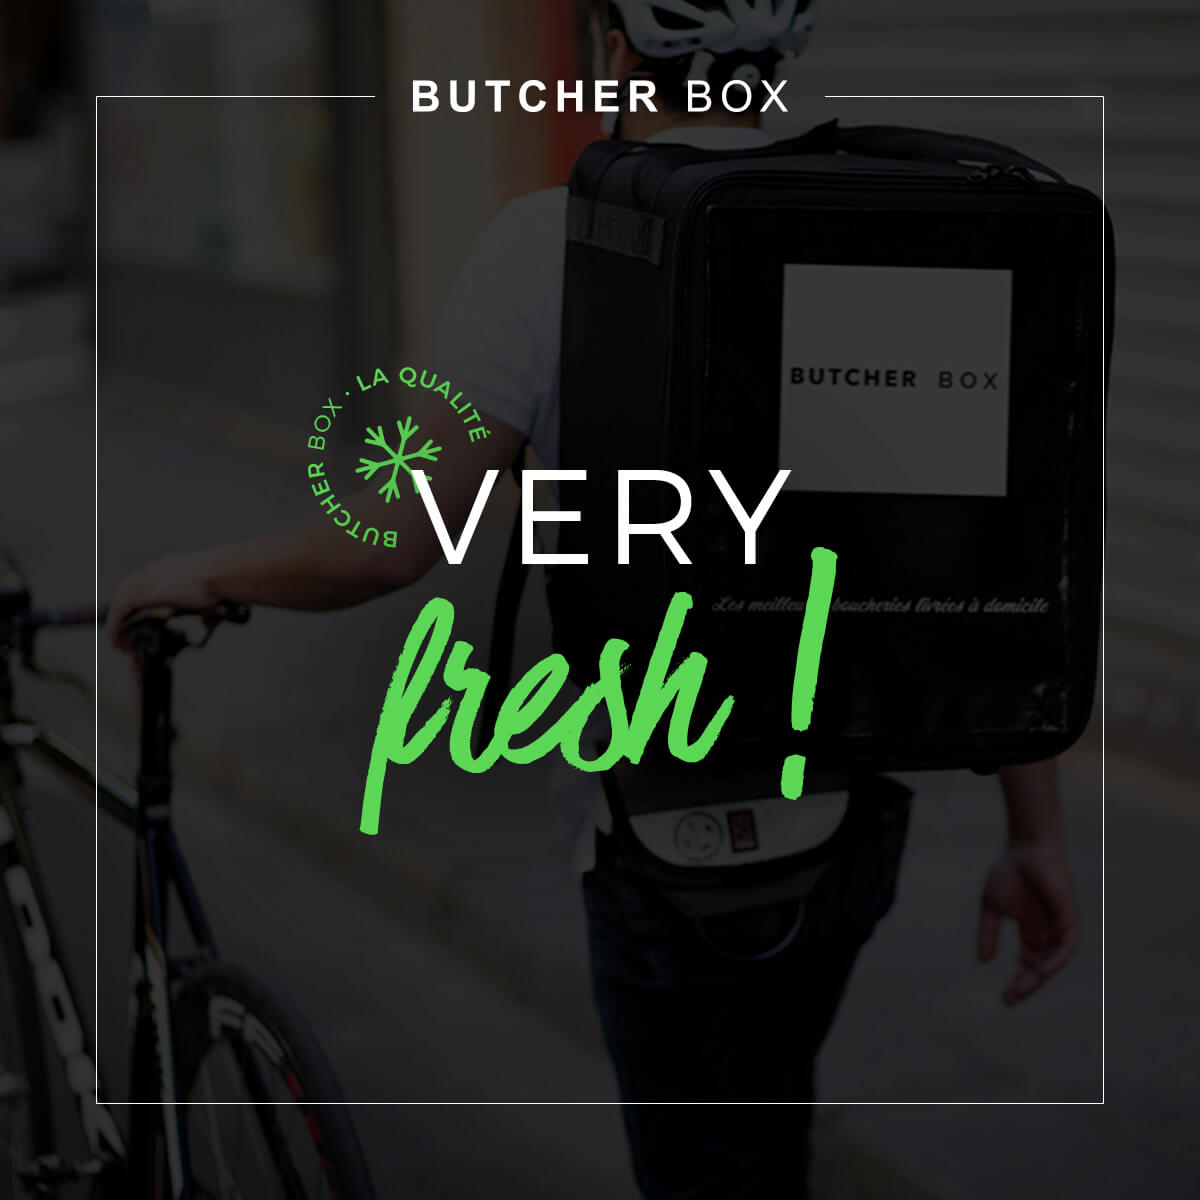 qualité facebook butcher box